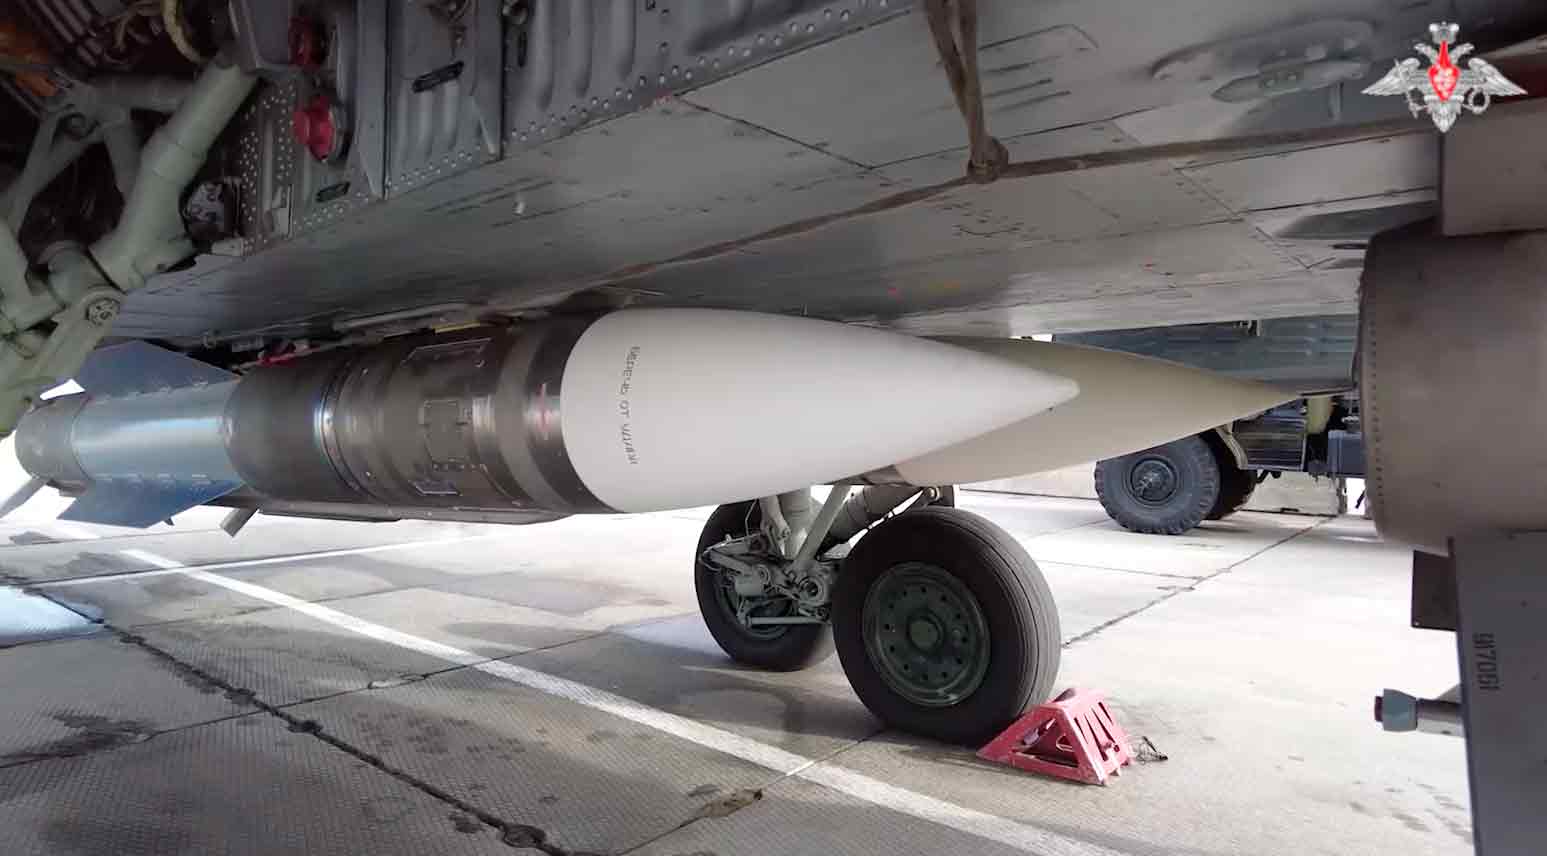 סרטון מציג את פעילות האיבטח האווירי של מטוס הקרב MiG-31 עם טילי R-33 ישנים אך עוצמתיים בטווח ארוך. תמונה וסרטון: התעתיק טלגרם t.me/mod_russia